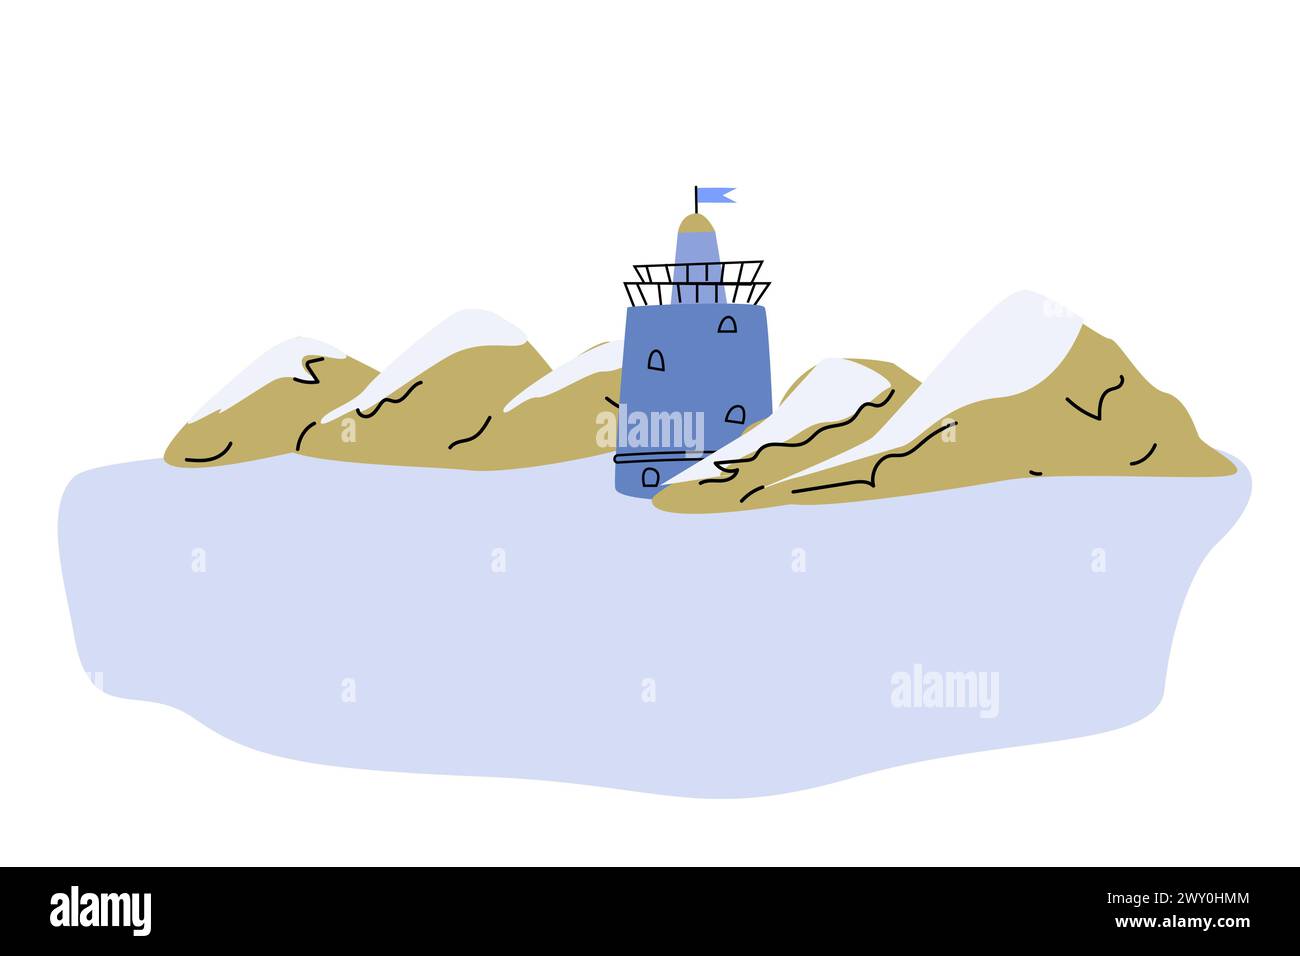 Joli phare bleu sur la plage de la mer avec des rochers de montagne - illustration de dessin animé de paysage marin. Illustration vectorielle de belle maison lumineuse et de rochers sur la côte Illustration de Vecteur